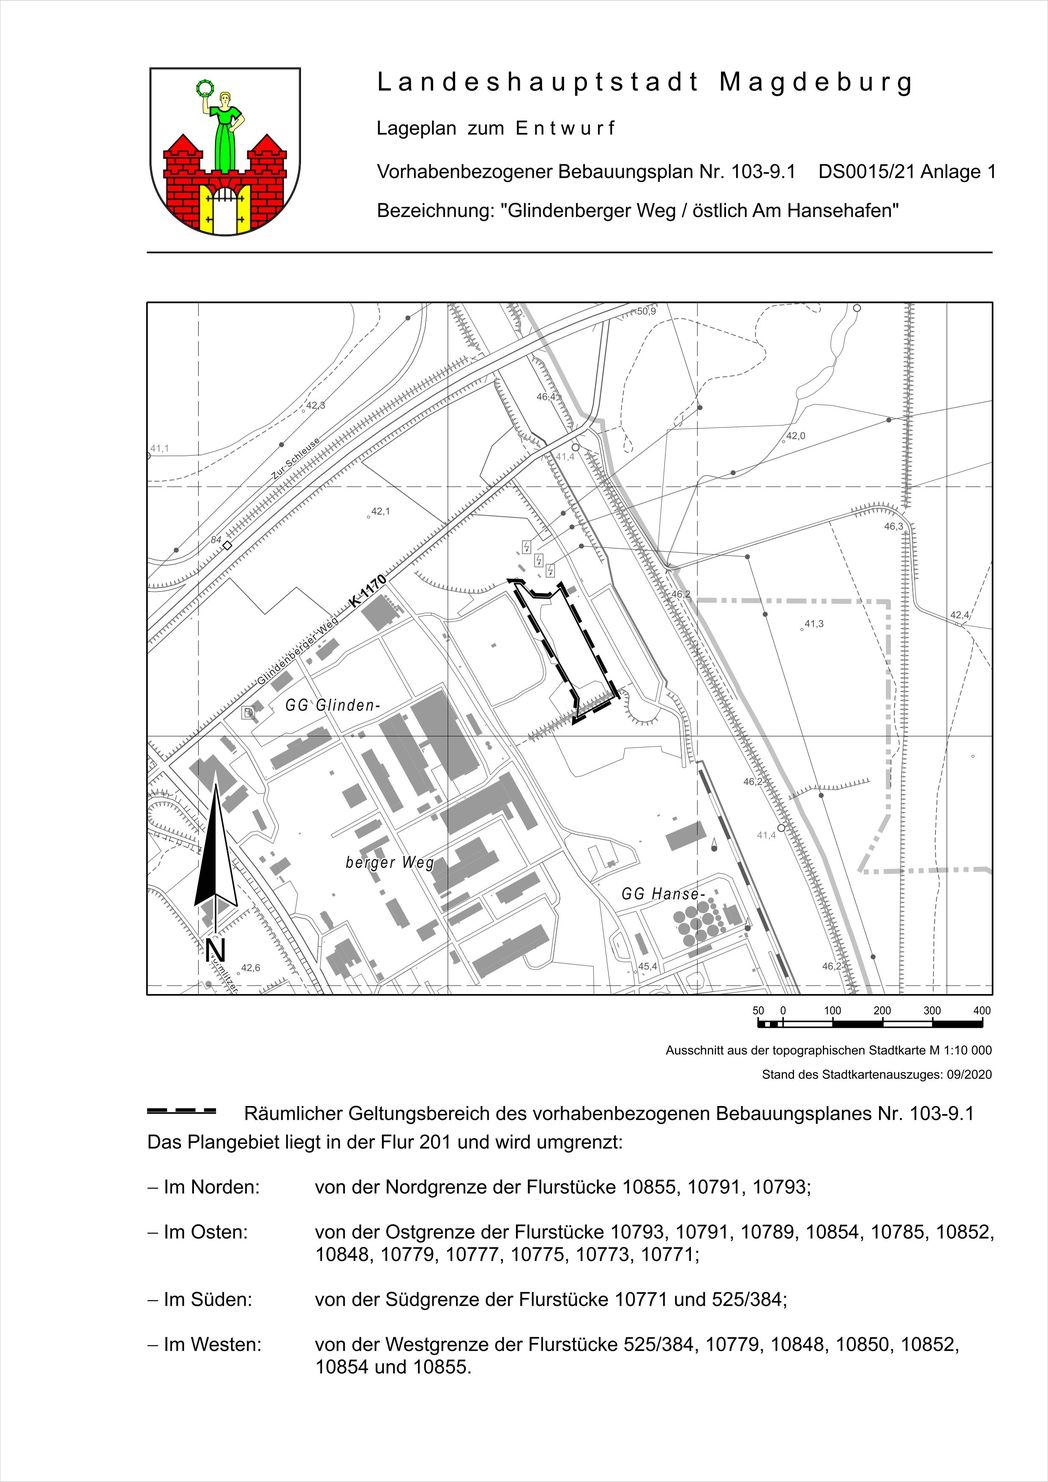 Bild vergrößern: Lage zum B-Plan 103-9.1 "Glindenberger Weg/östl. Am Hansehafen"